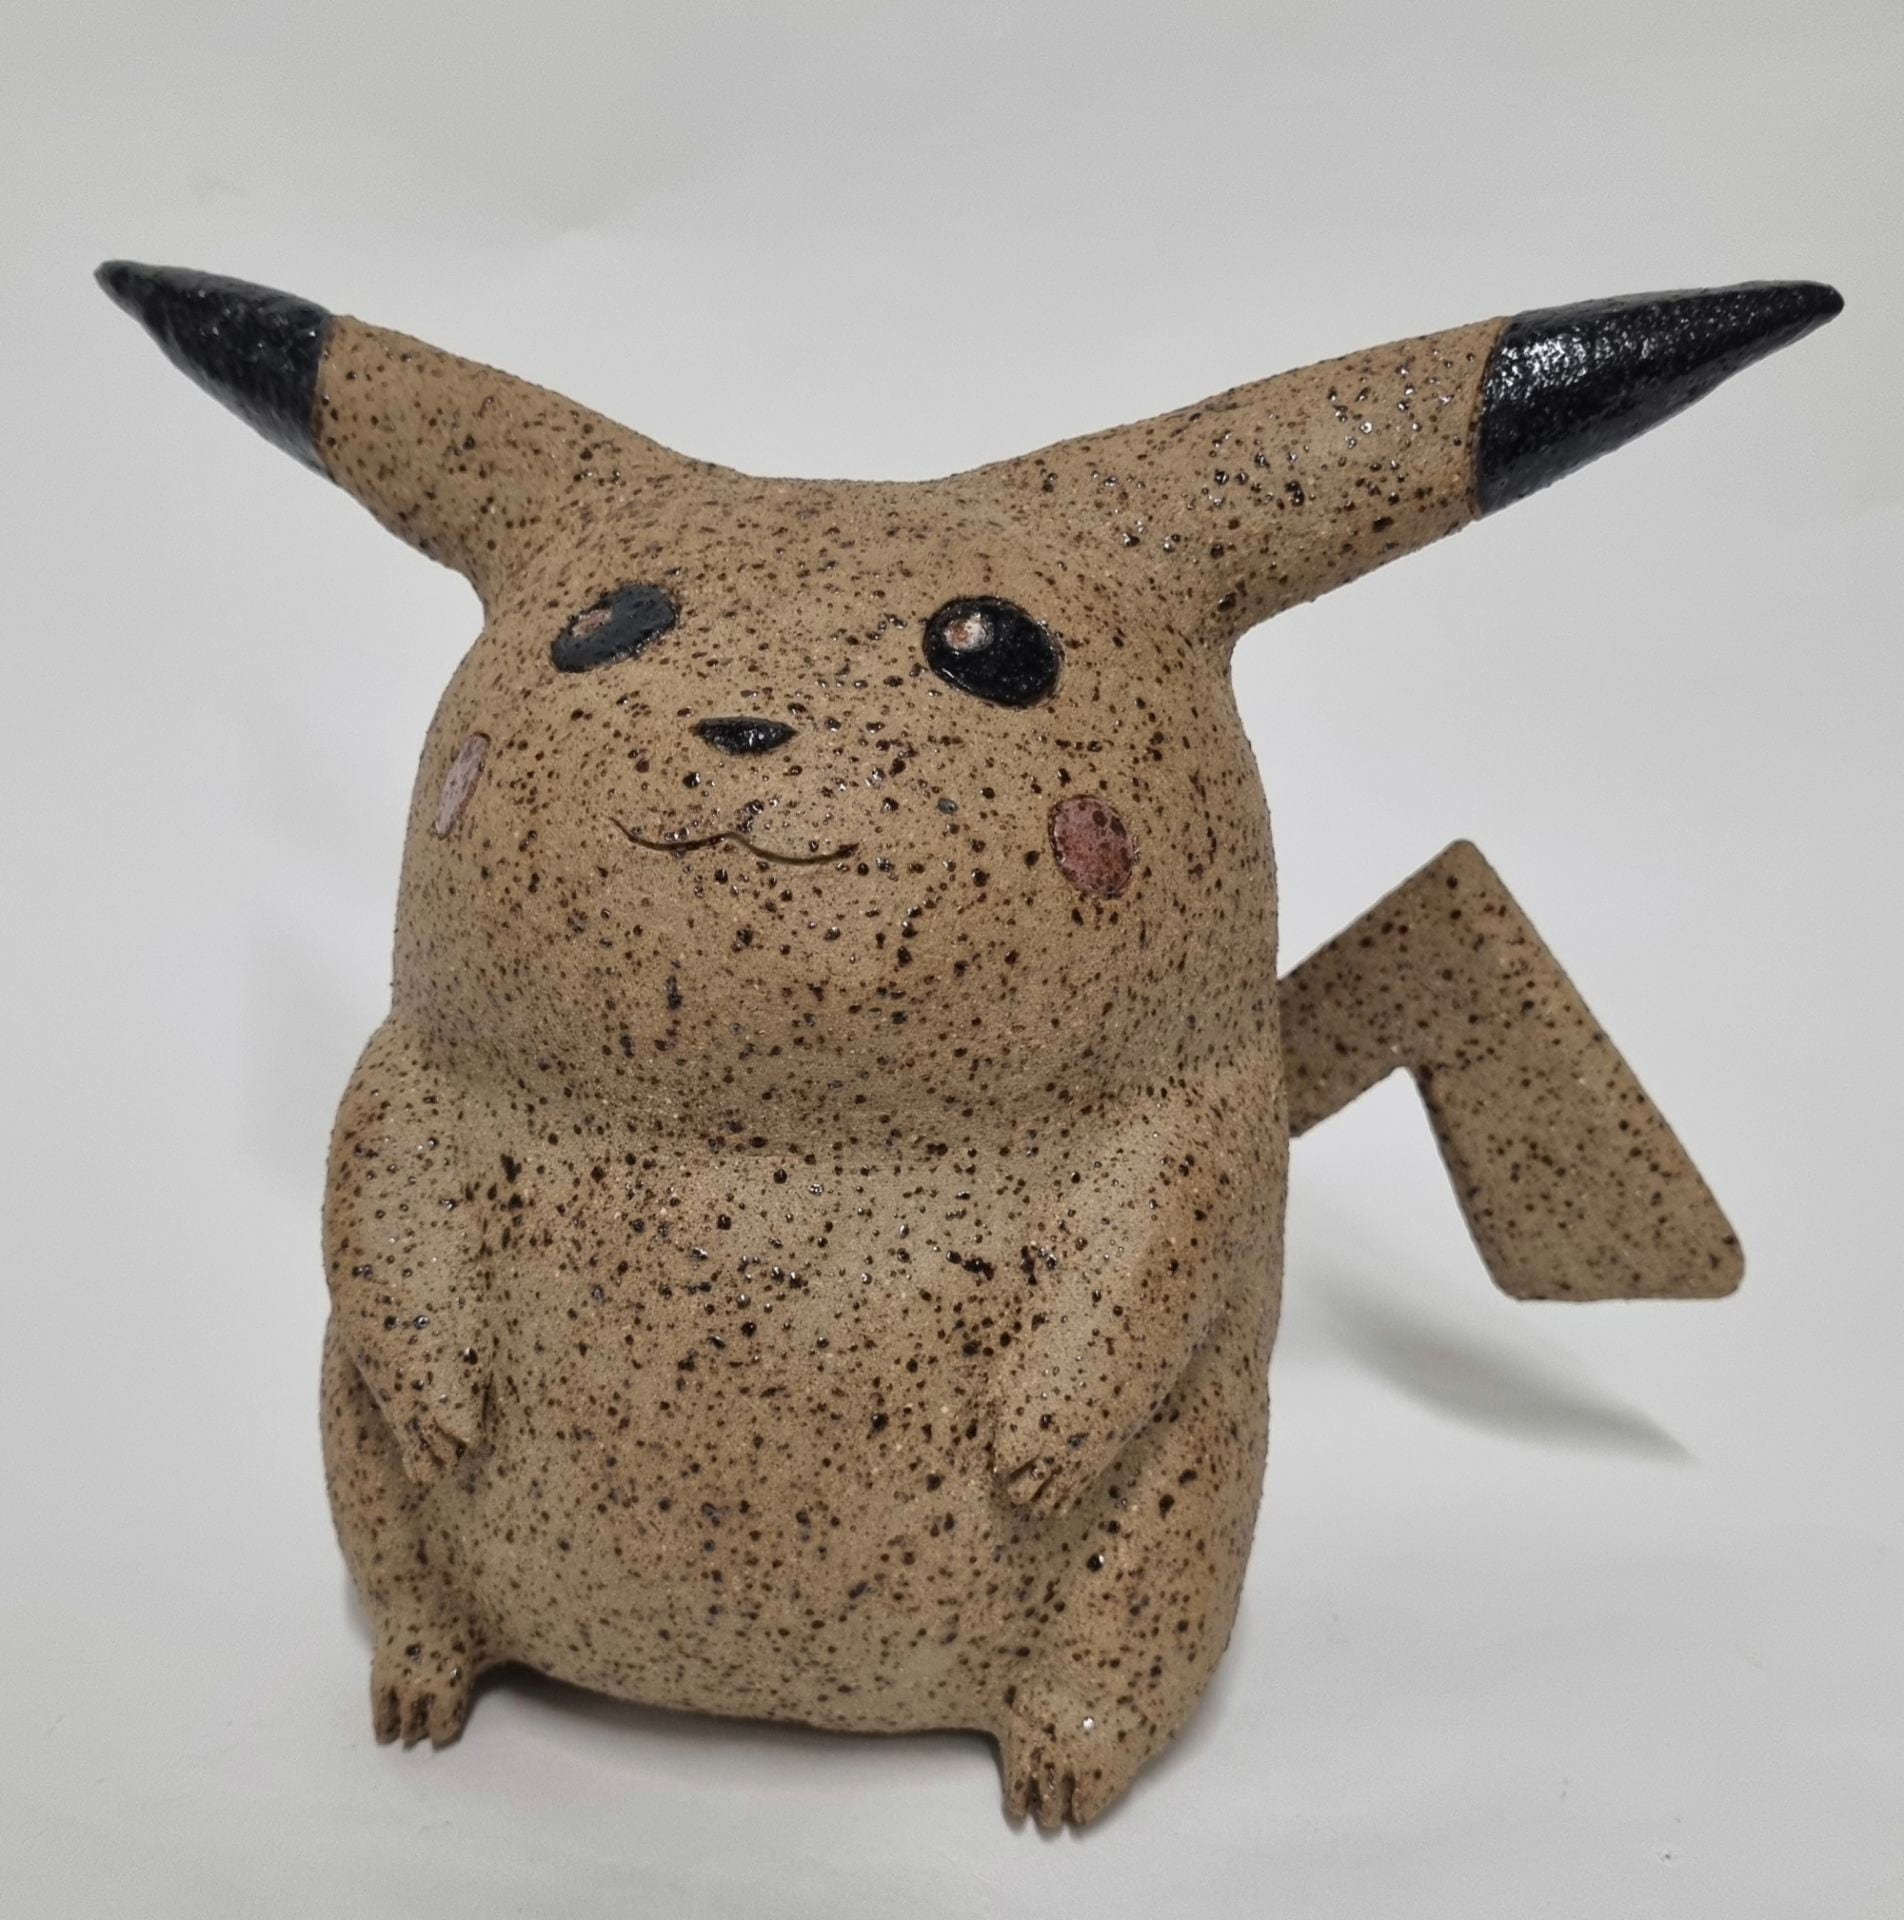 First gen pikachu statue